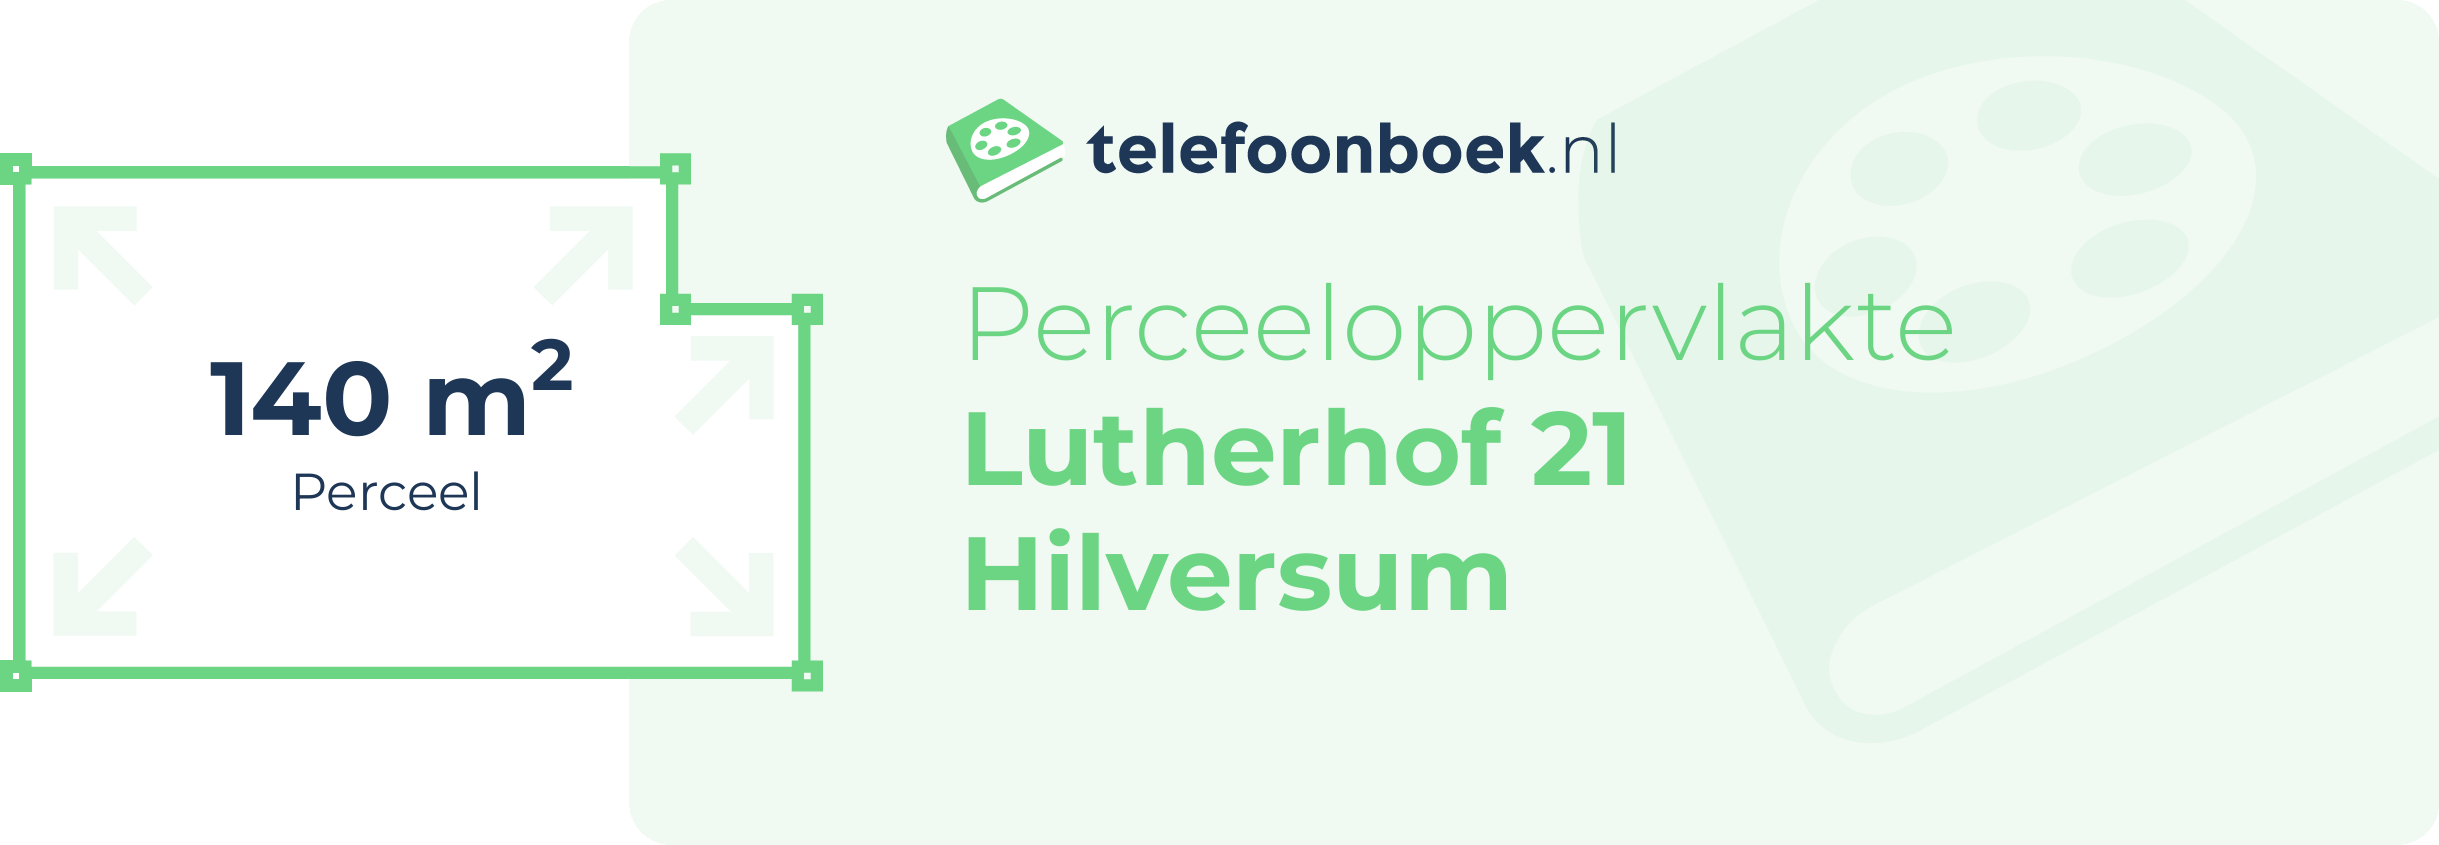 Perceeloppervlakte Lutherhof 21 Hilversum